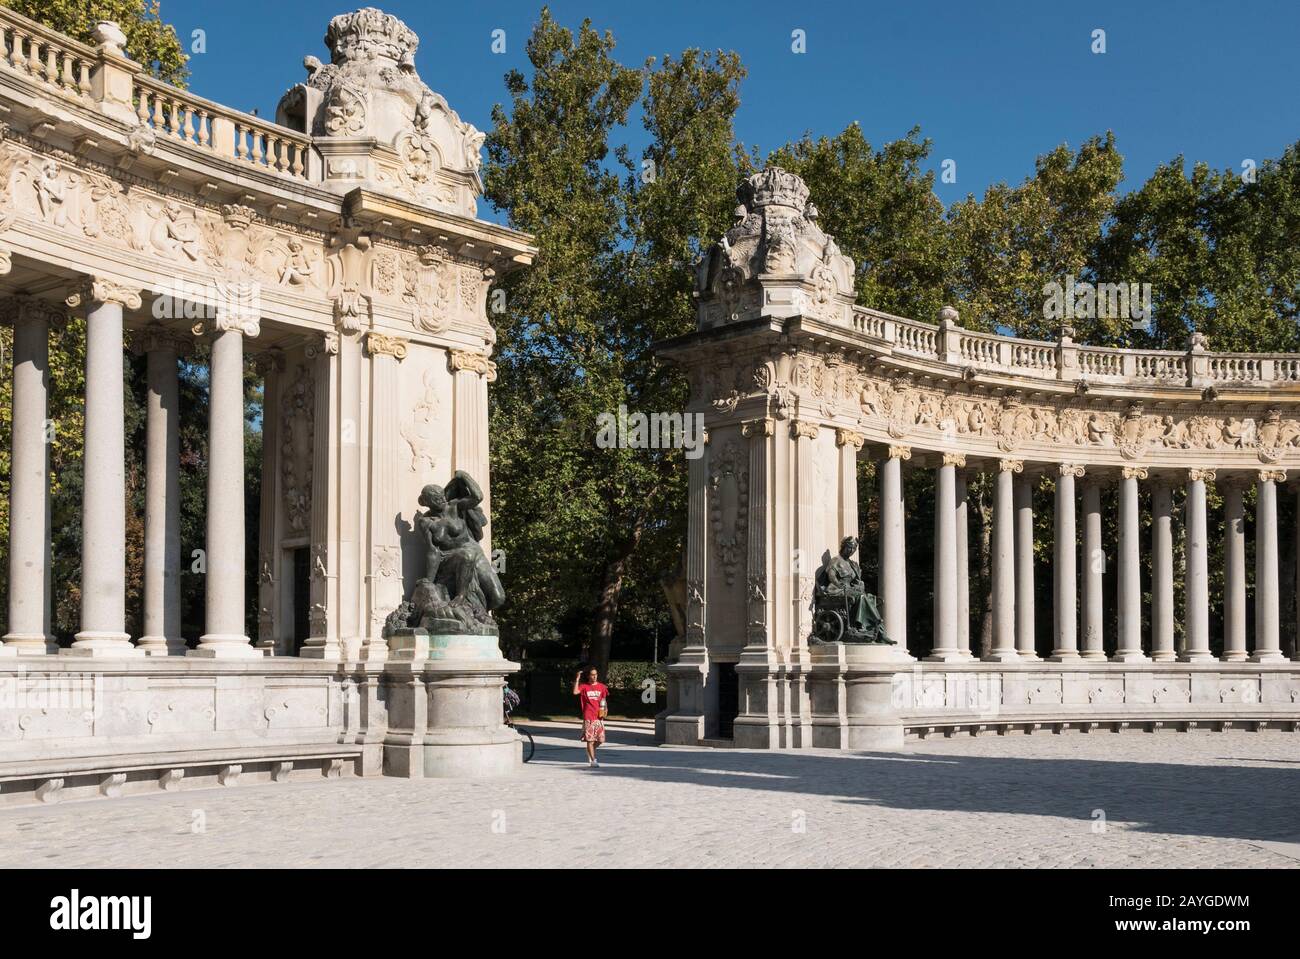 Eine Statue vor Colonnade am Alonso-II-Denkmal im Retiro-Park, Madrid, Spanien Stockfoto